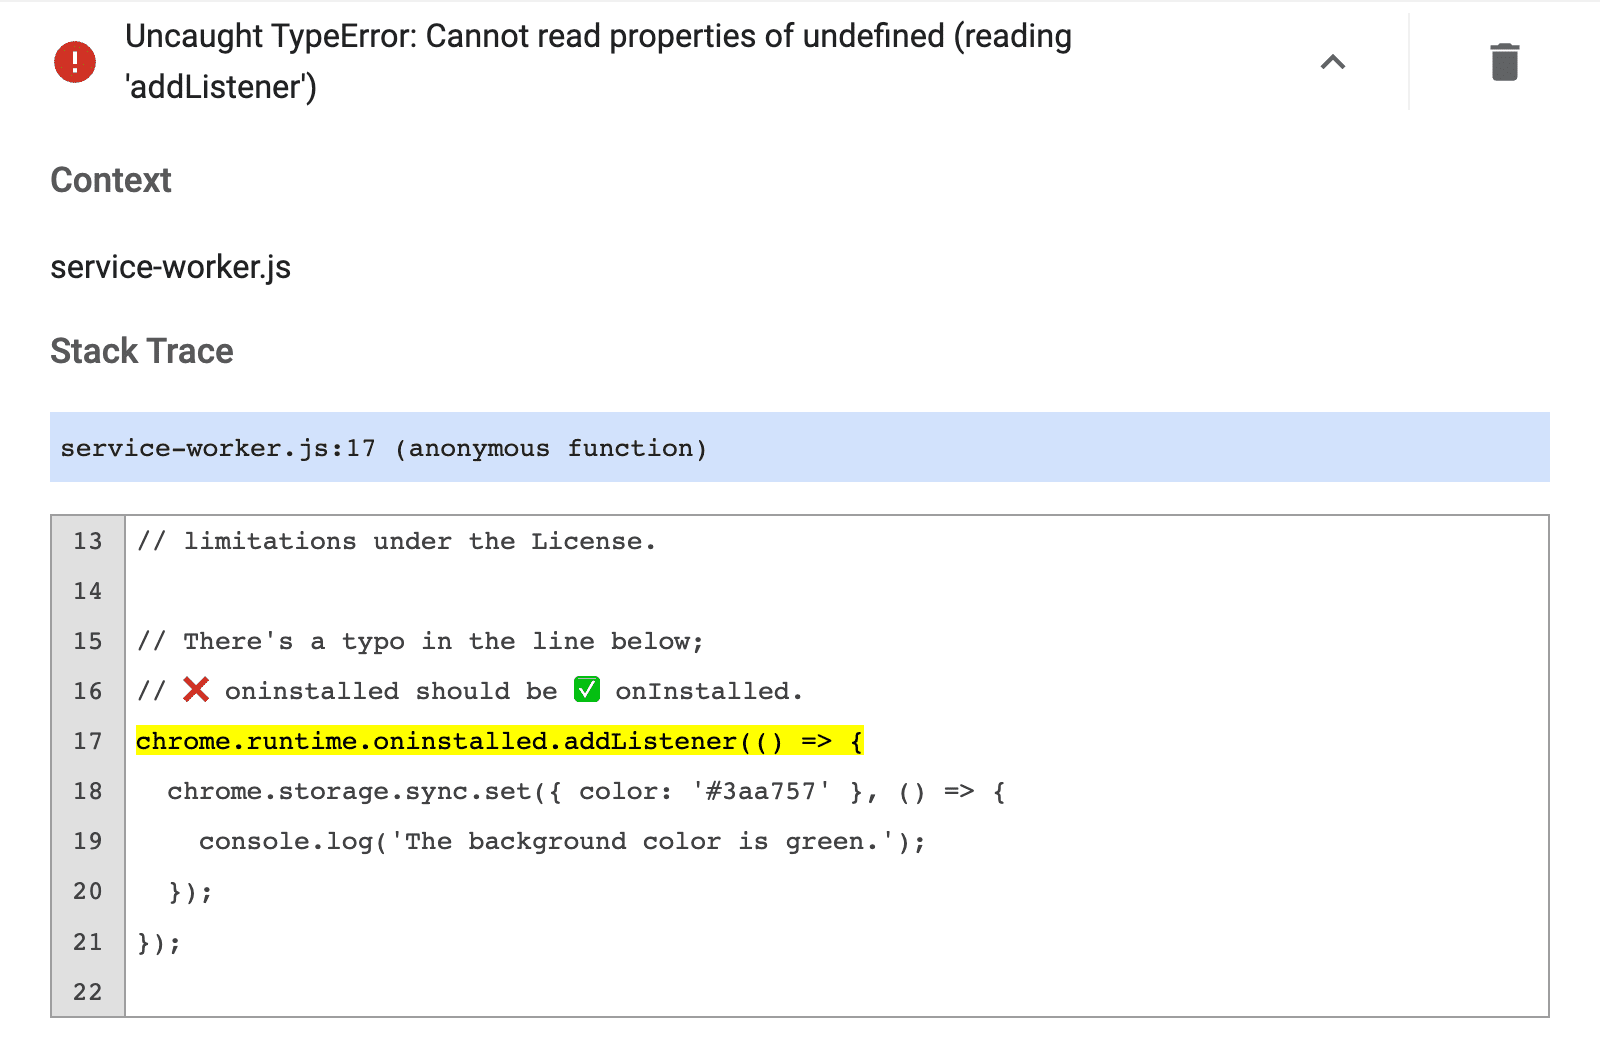 Uncaught TypeError: Cannot read properties of undefined error message